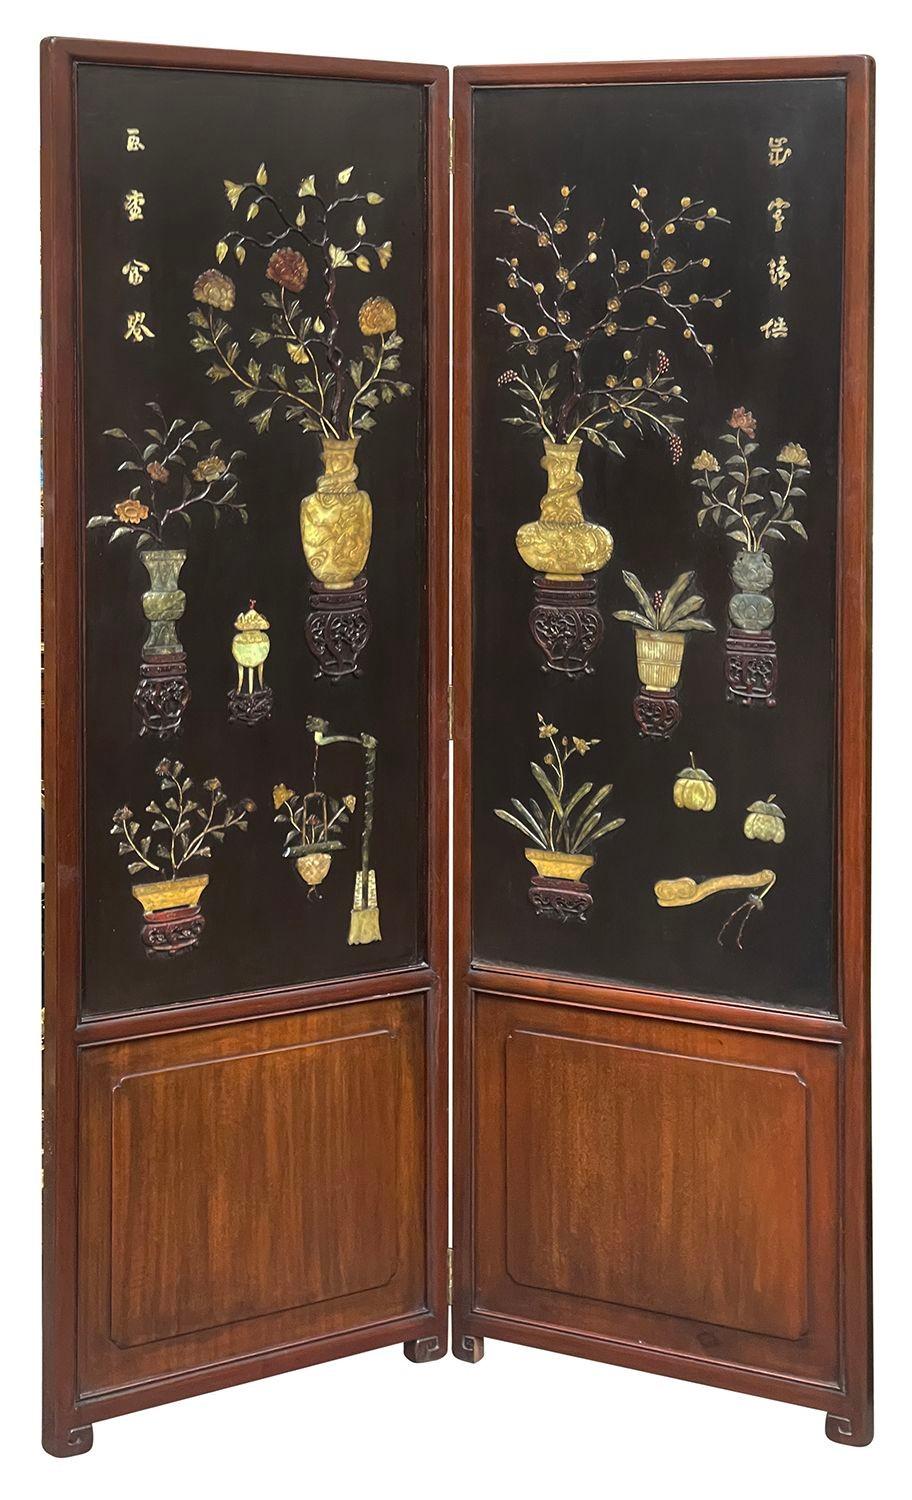 Eine sehr beeindruckende und dekorative chinesische 8 Foldes Leinwand des 19. Jahrhunderts. Jede Tafel zeigt handgeschnitzte klassische Vasen, Ständer und Blumen aus Speckstein auf schwarzem Lackgrund, die in Hartholzrahmen montiert sind.

Charge 78